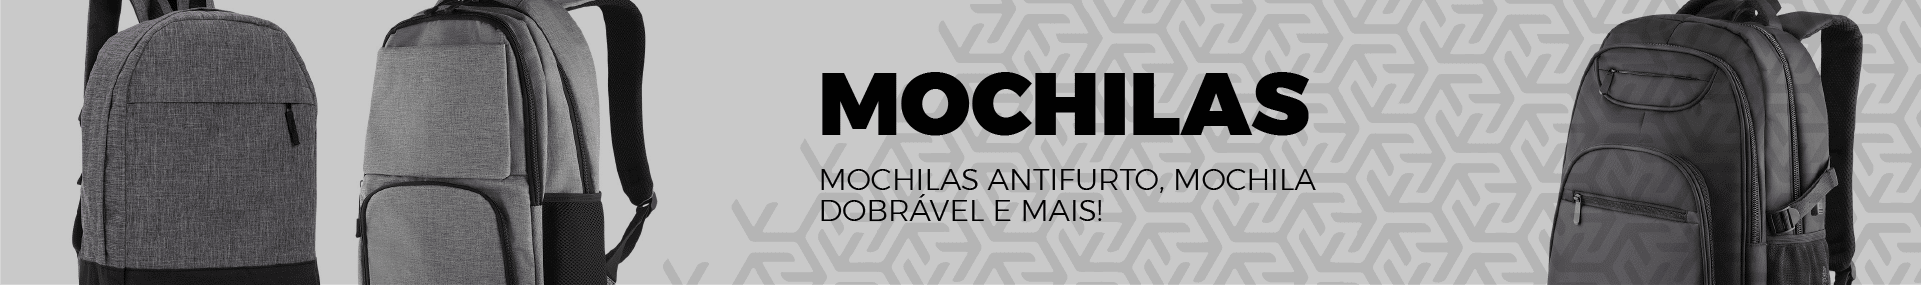 Mochilas Banner